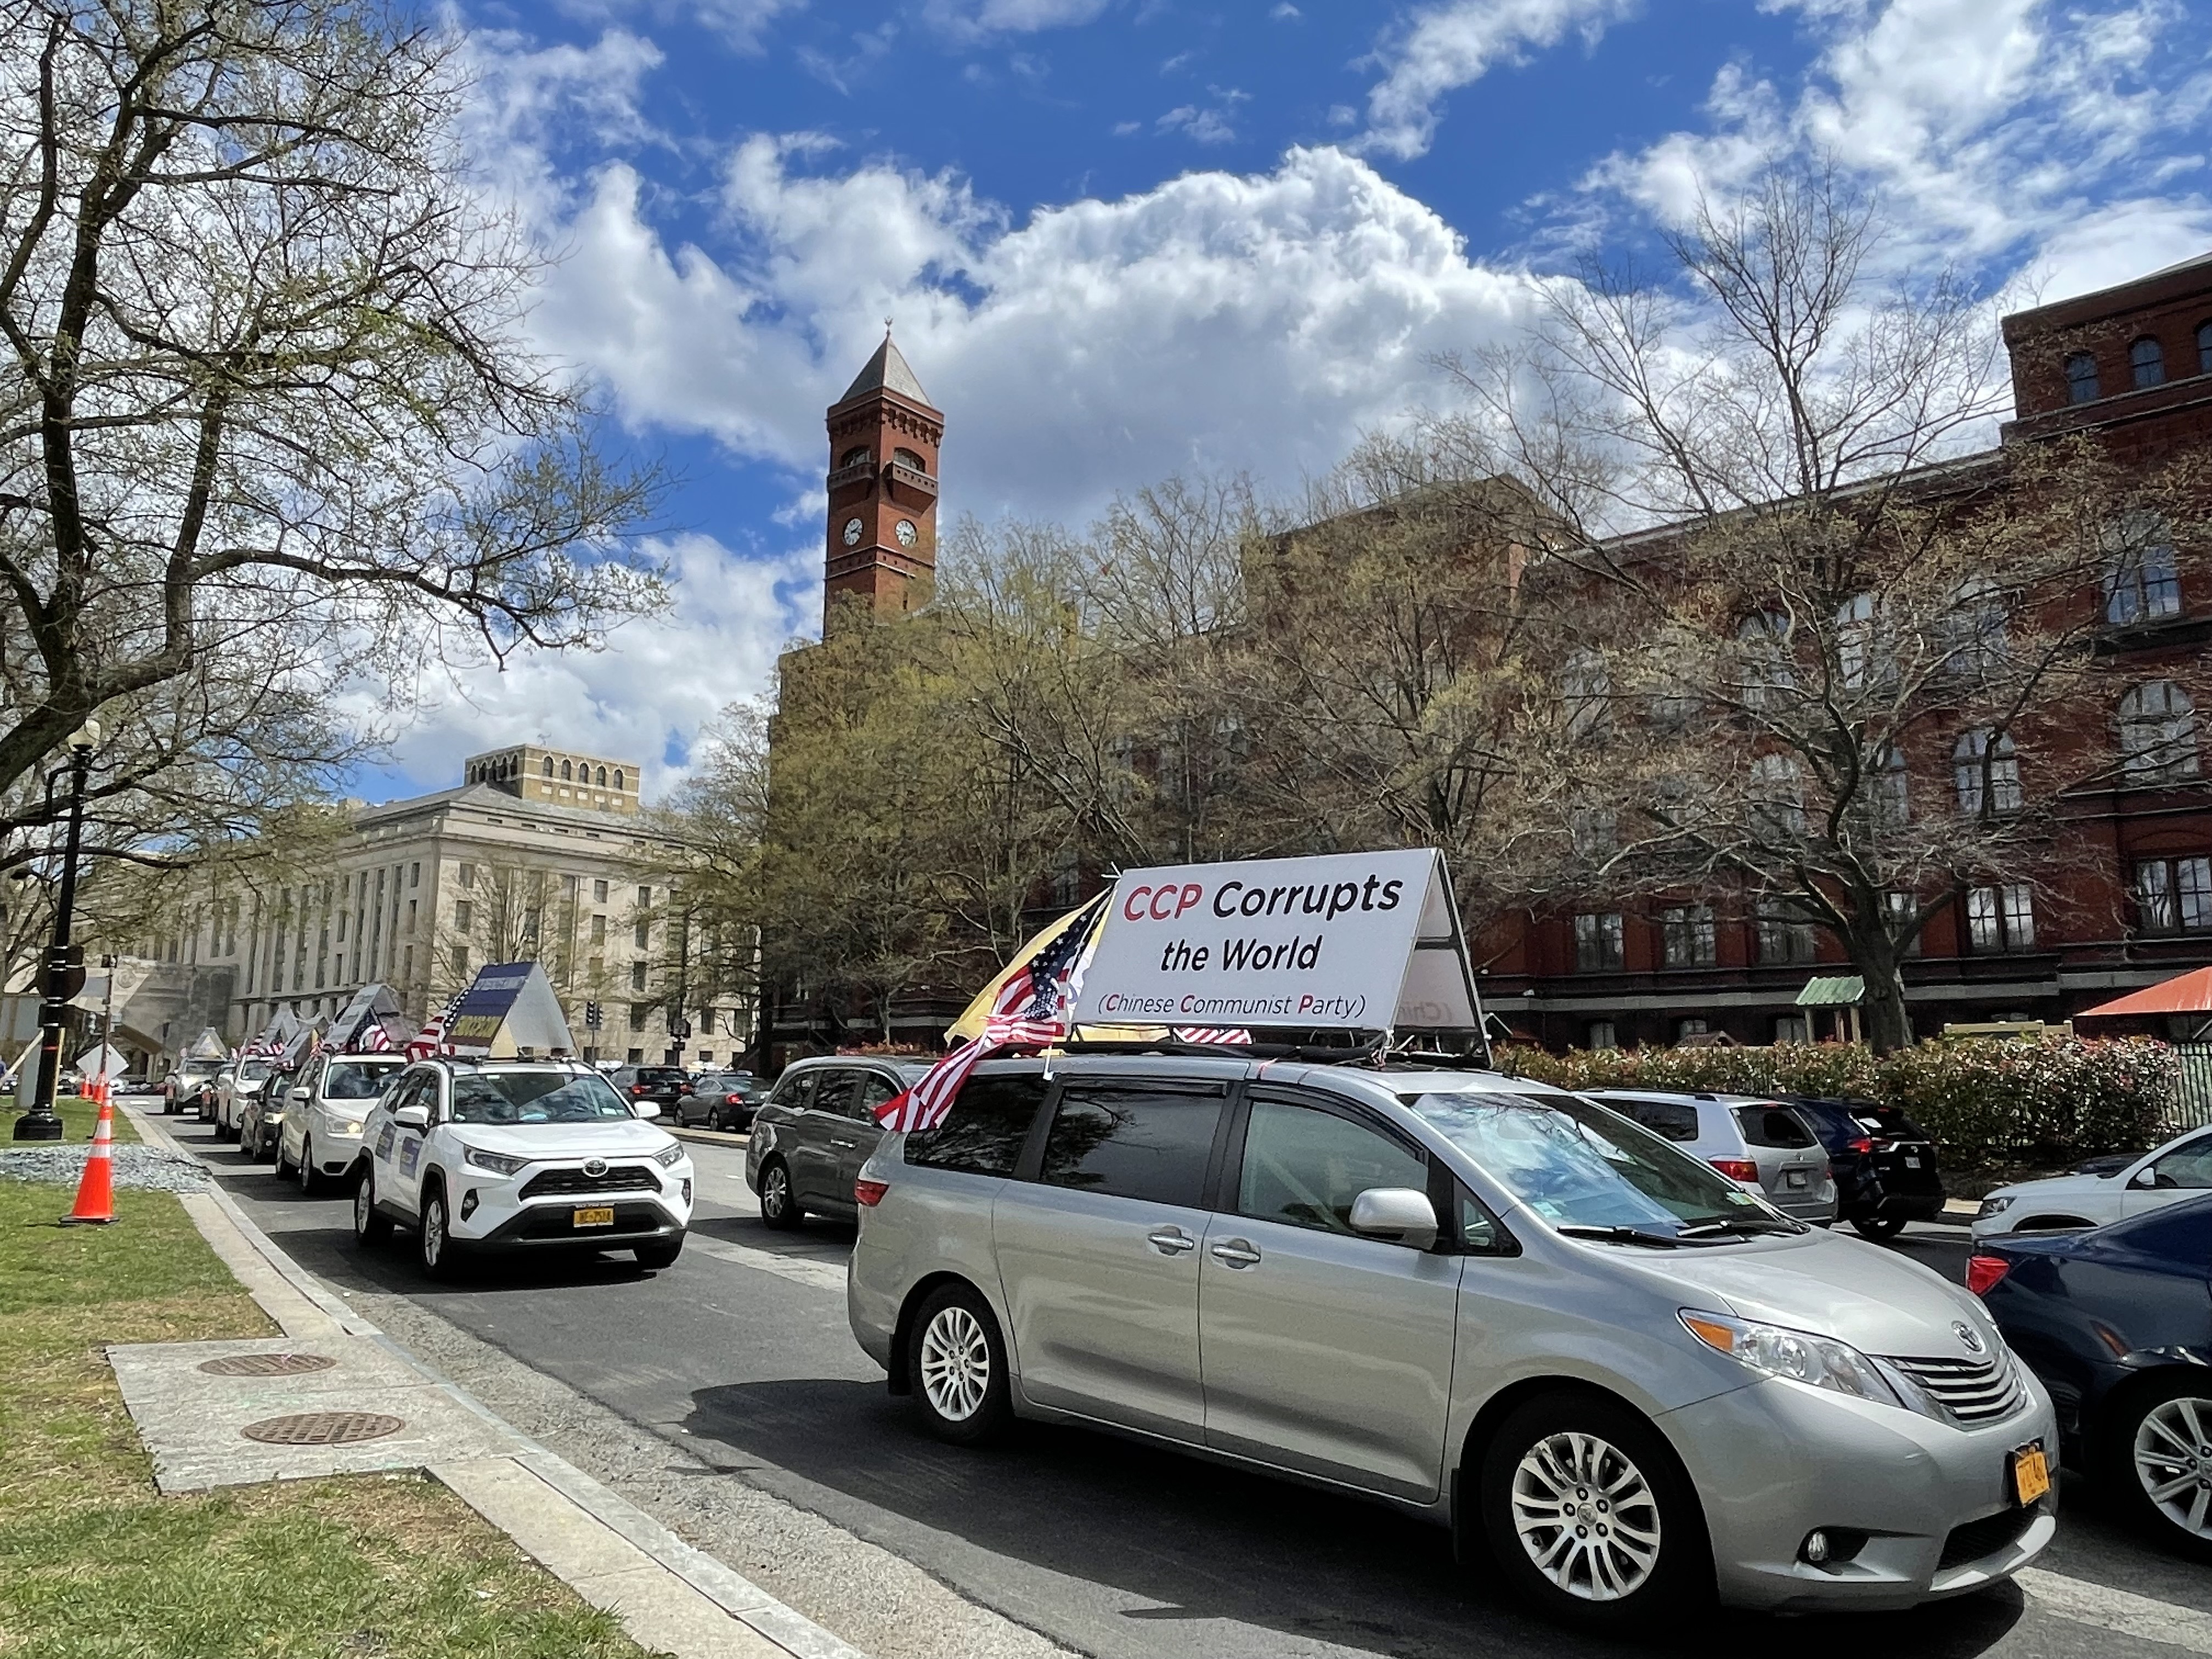 “打倒中共恶魔”（End CCP）纽约车队在华盛顿DC车游，传递“拒绝中共 远离中共病毒”的信息。